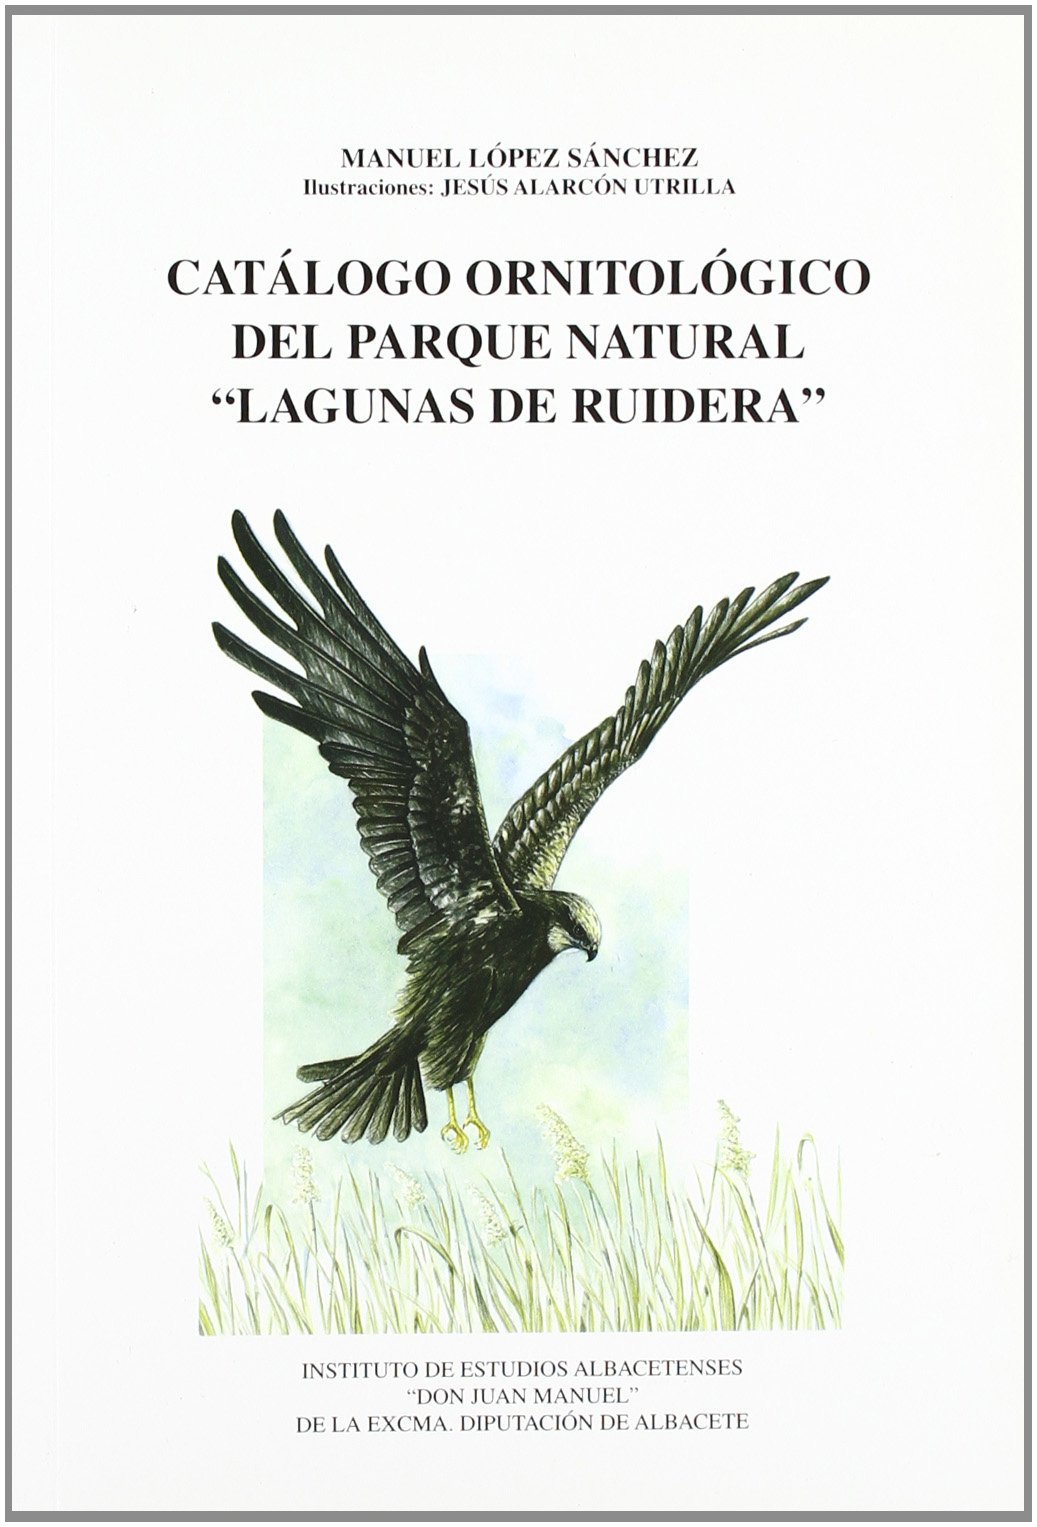 Imagen de portada del libro Catálogo ornitológico del Parque Natural "Lagunas de Ruidera"